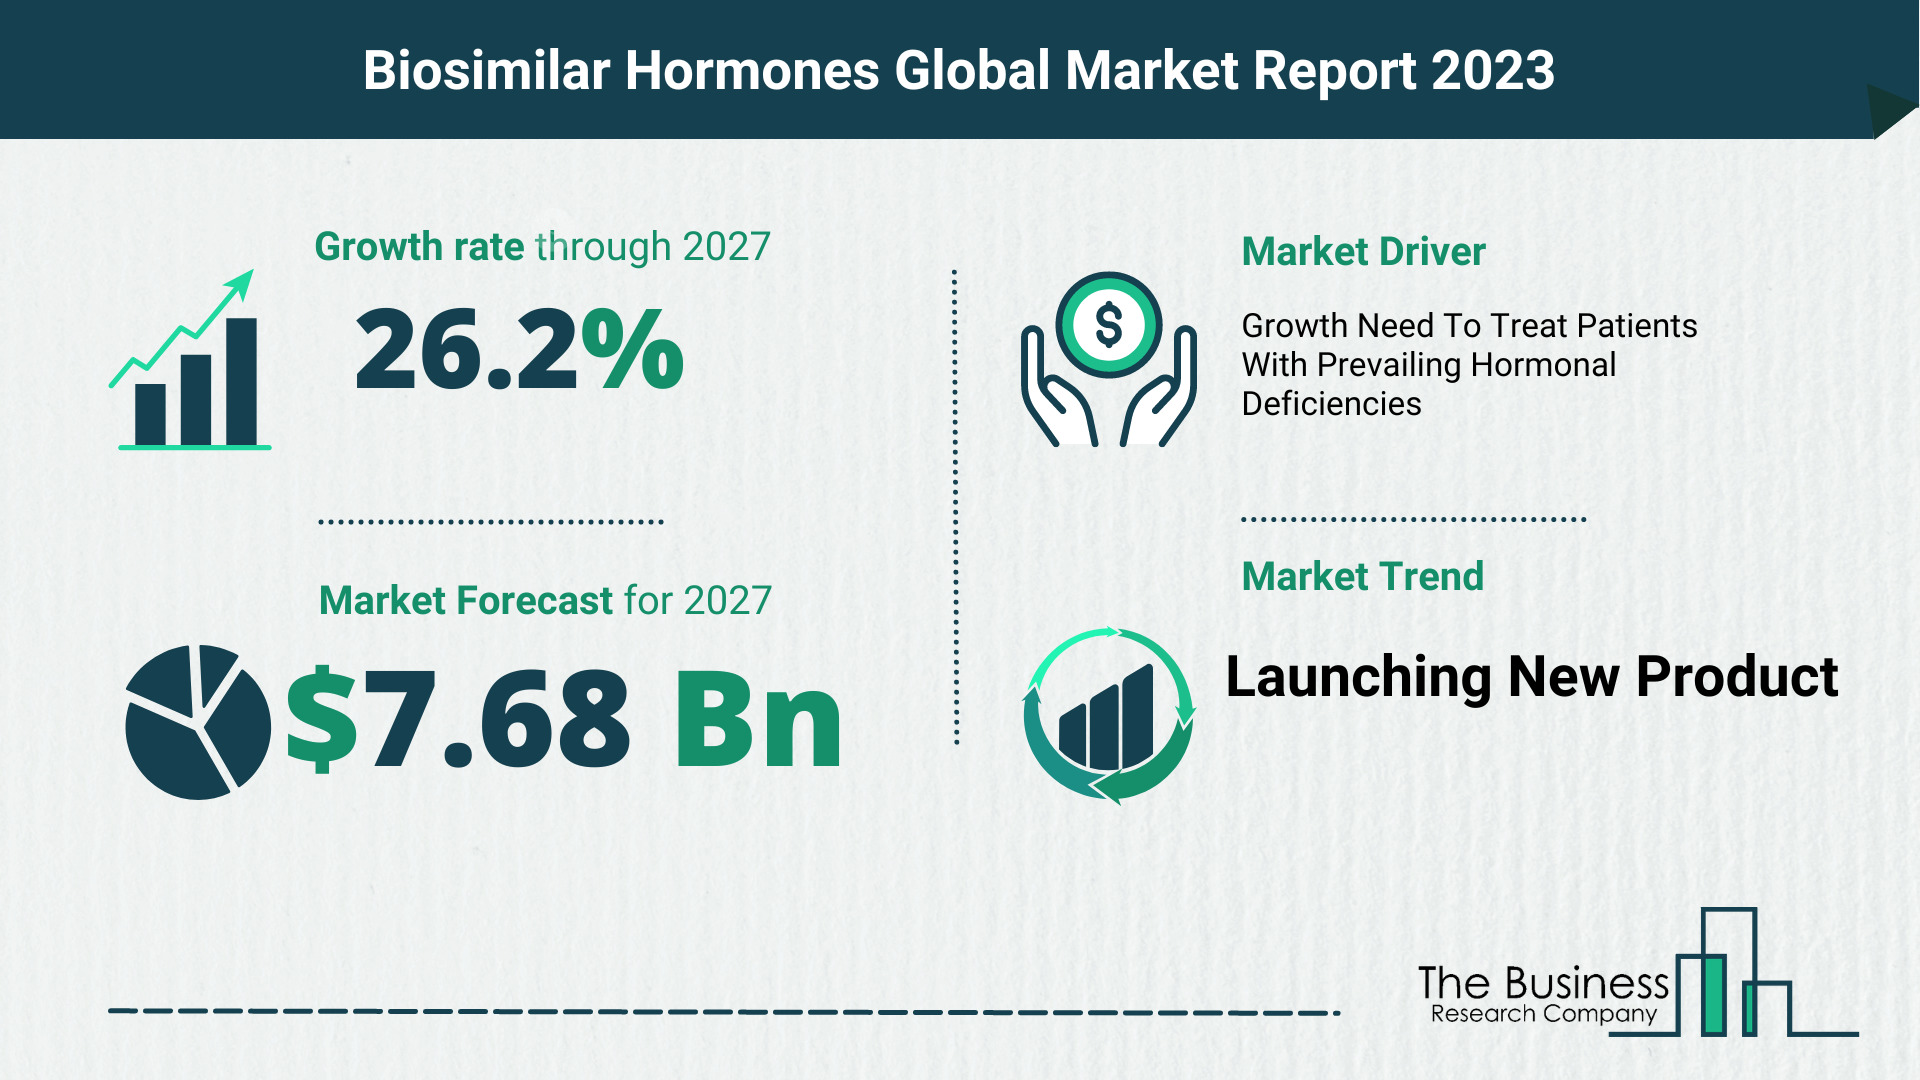 Global Biosimilar Hormones Market Opportunities And Strategies 2023